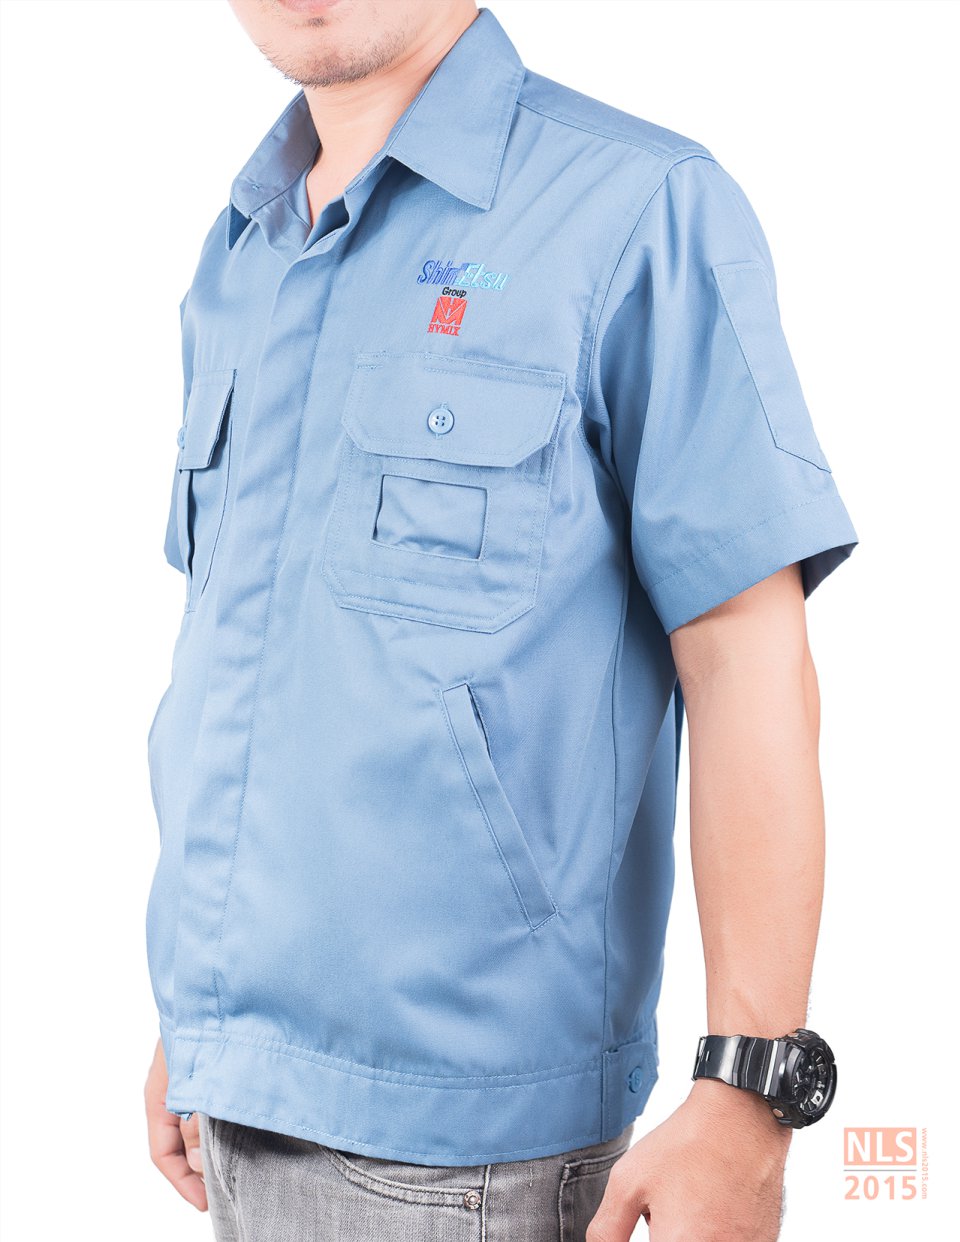 รับตัดชุดพนักงาน รับผลิตยูนิฟอร์ม ชุดช่าง เสื้อพนักงาน ชุดพนักงานโรงงาน บริษัท นลินสิริ 2015 จำกัด ชลบุรี ศรีราชารูปที่ 